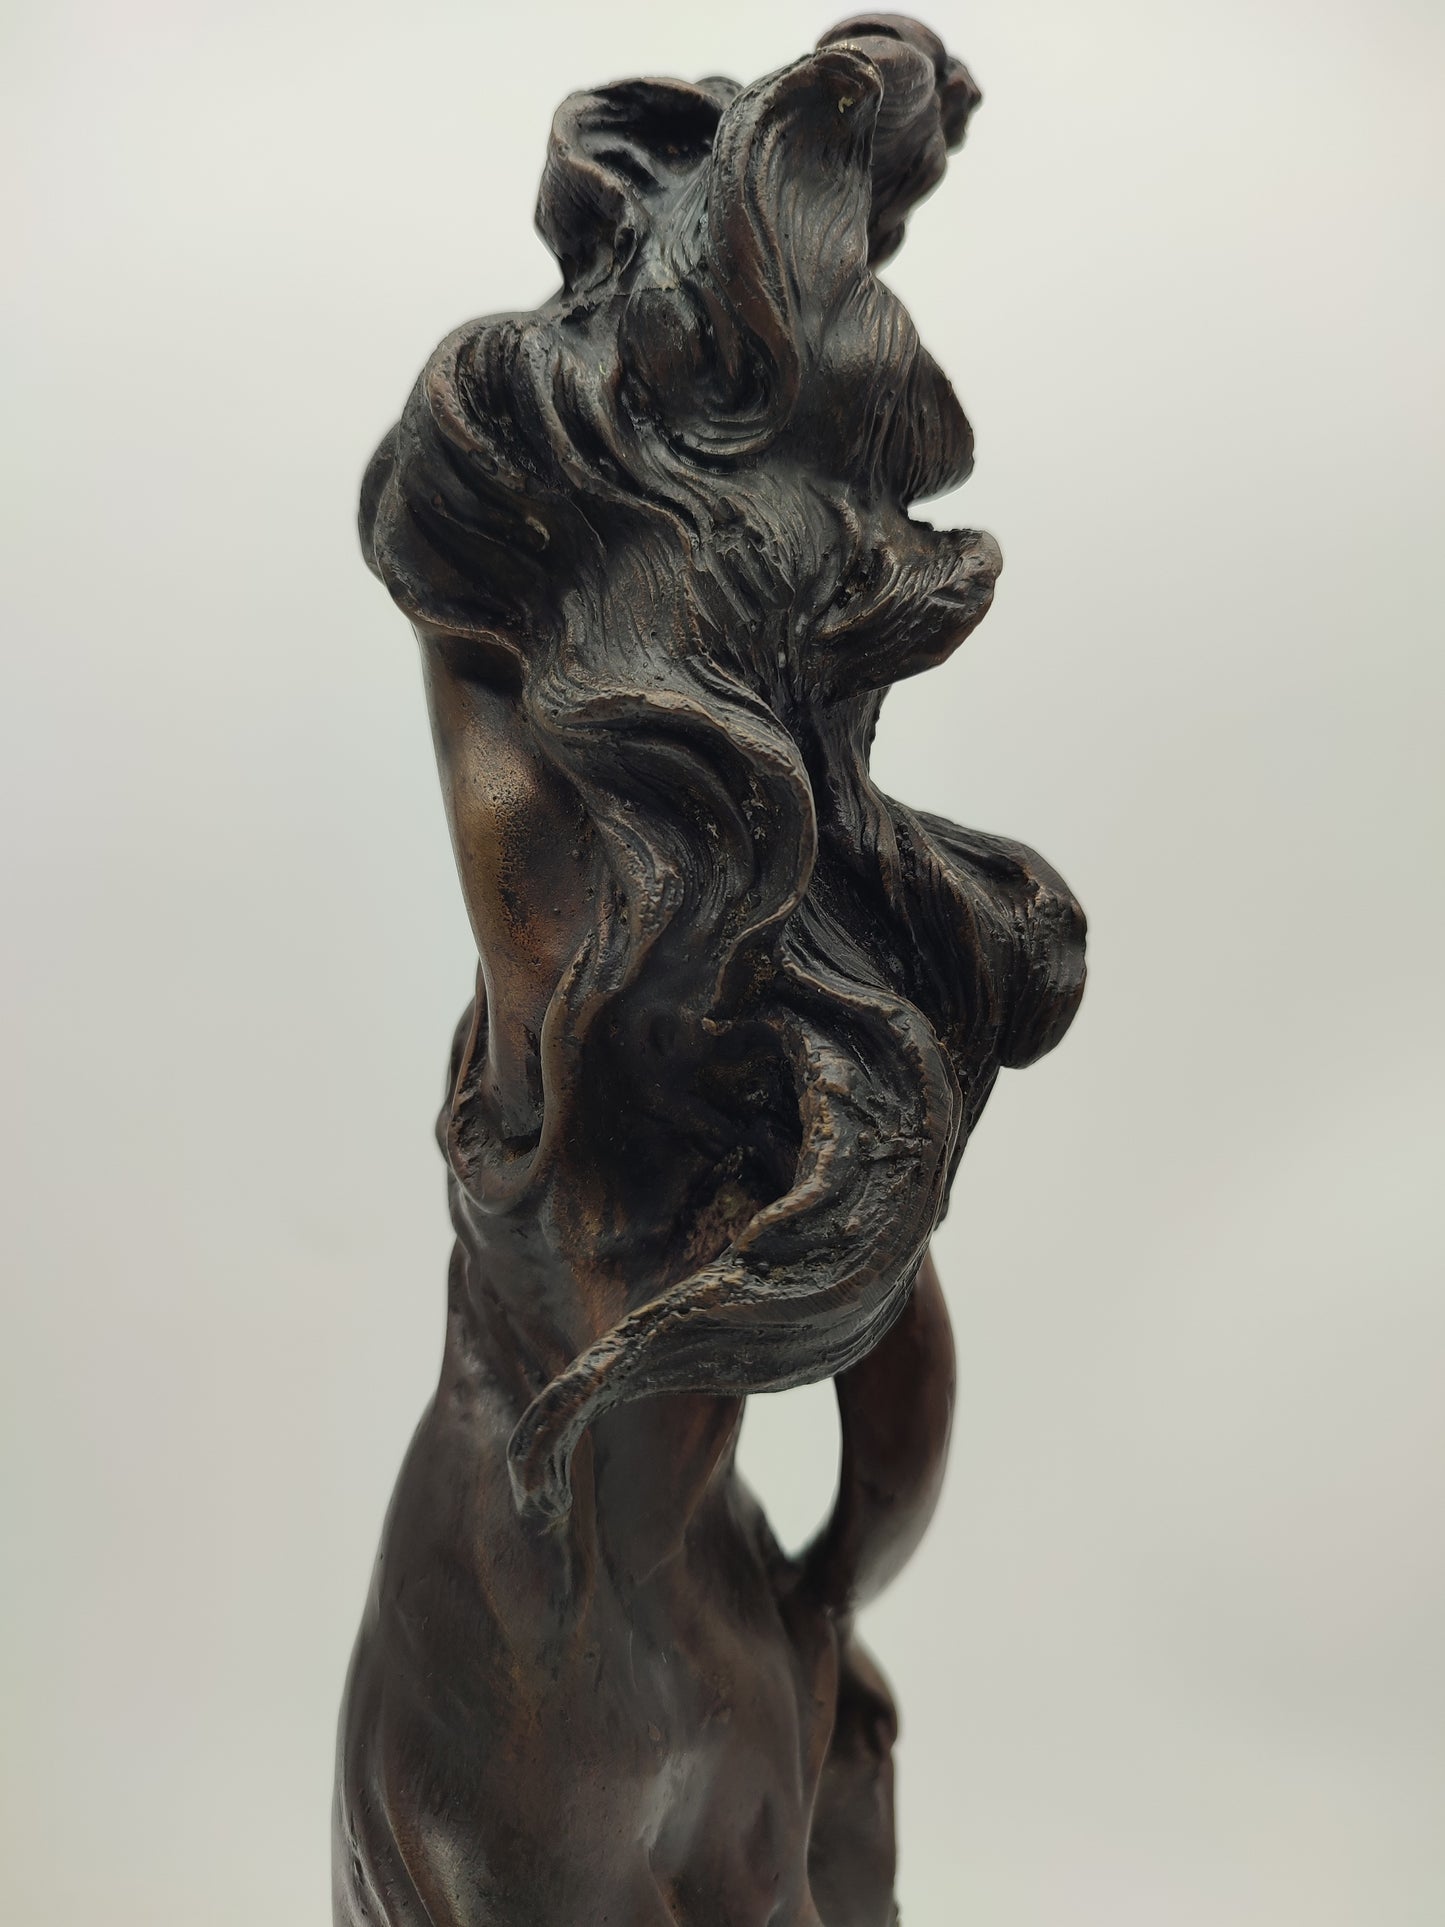 70899 Statua donna in bronzo Taurus